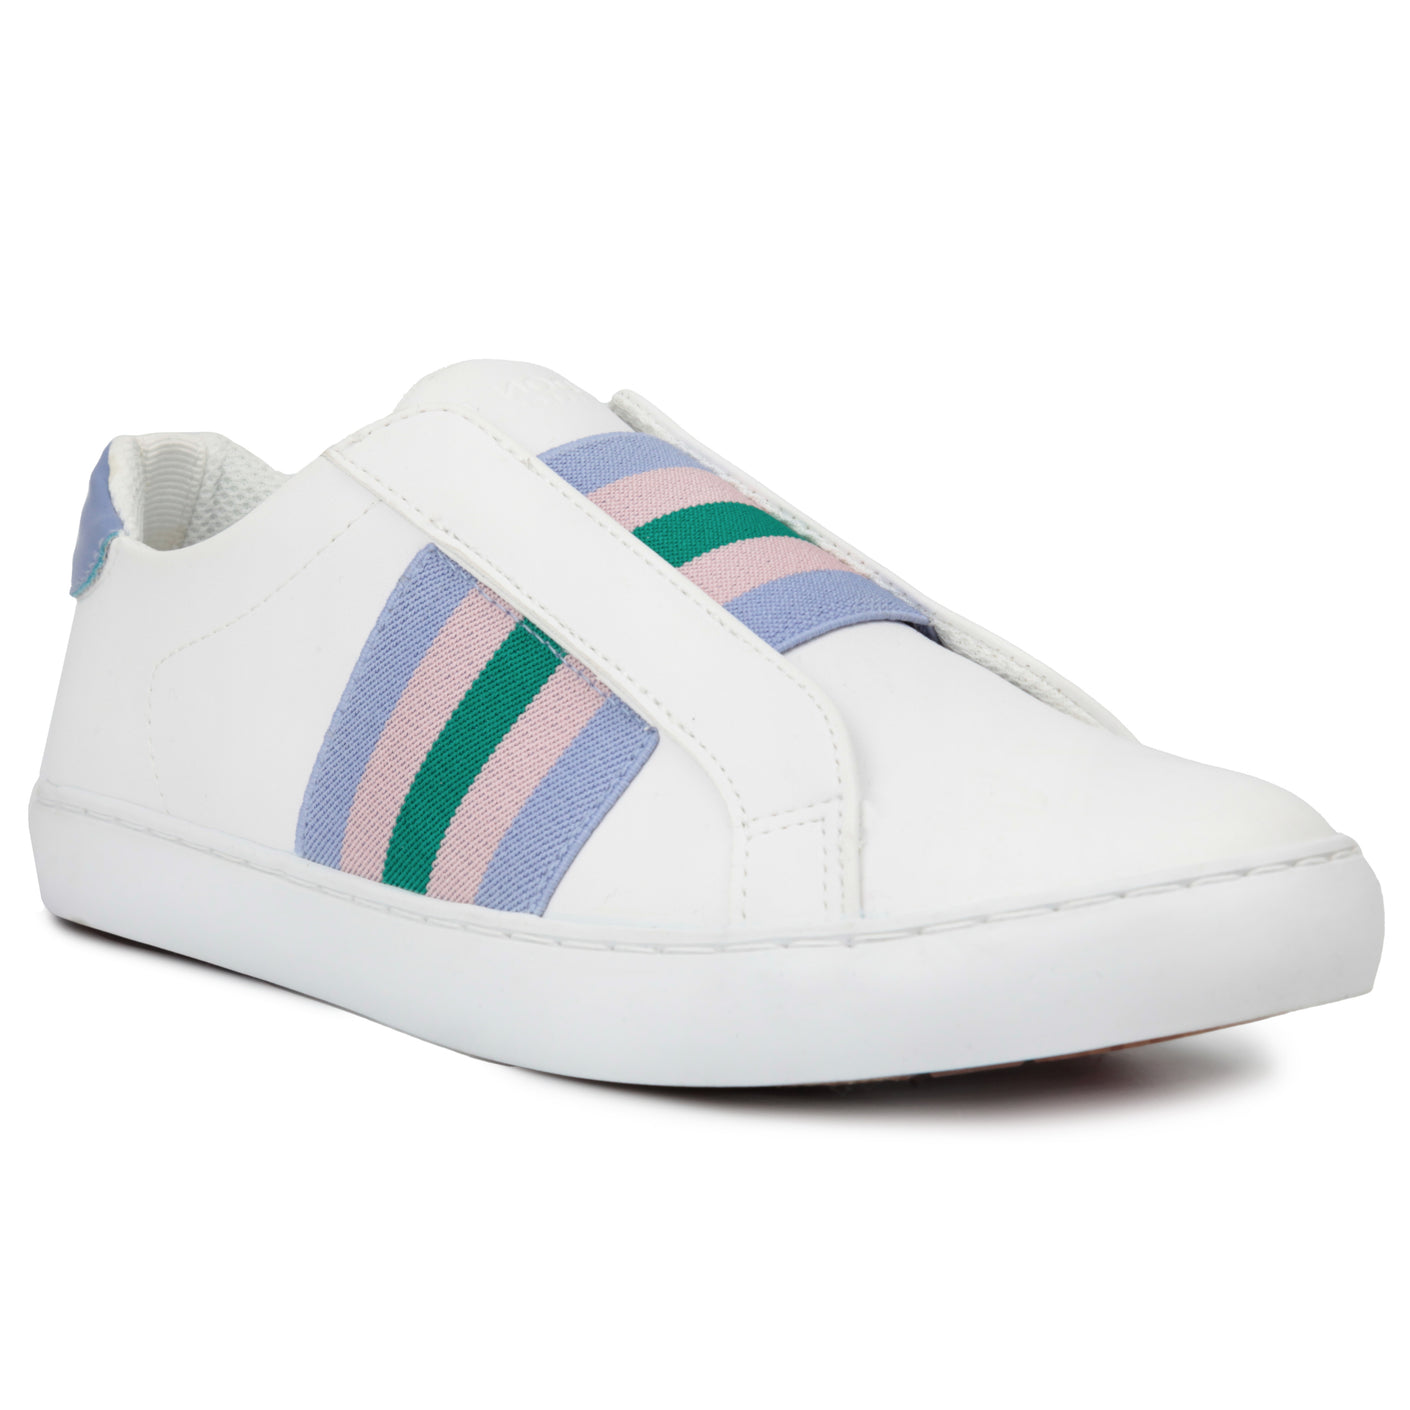 periwinkle stripe || white slip-on sneaker shoe with periwinkle stripe